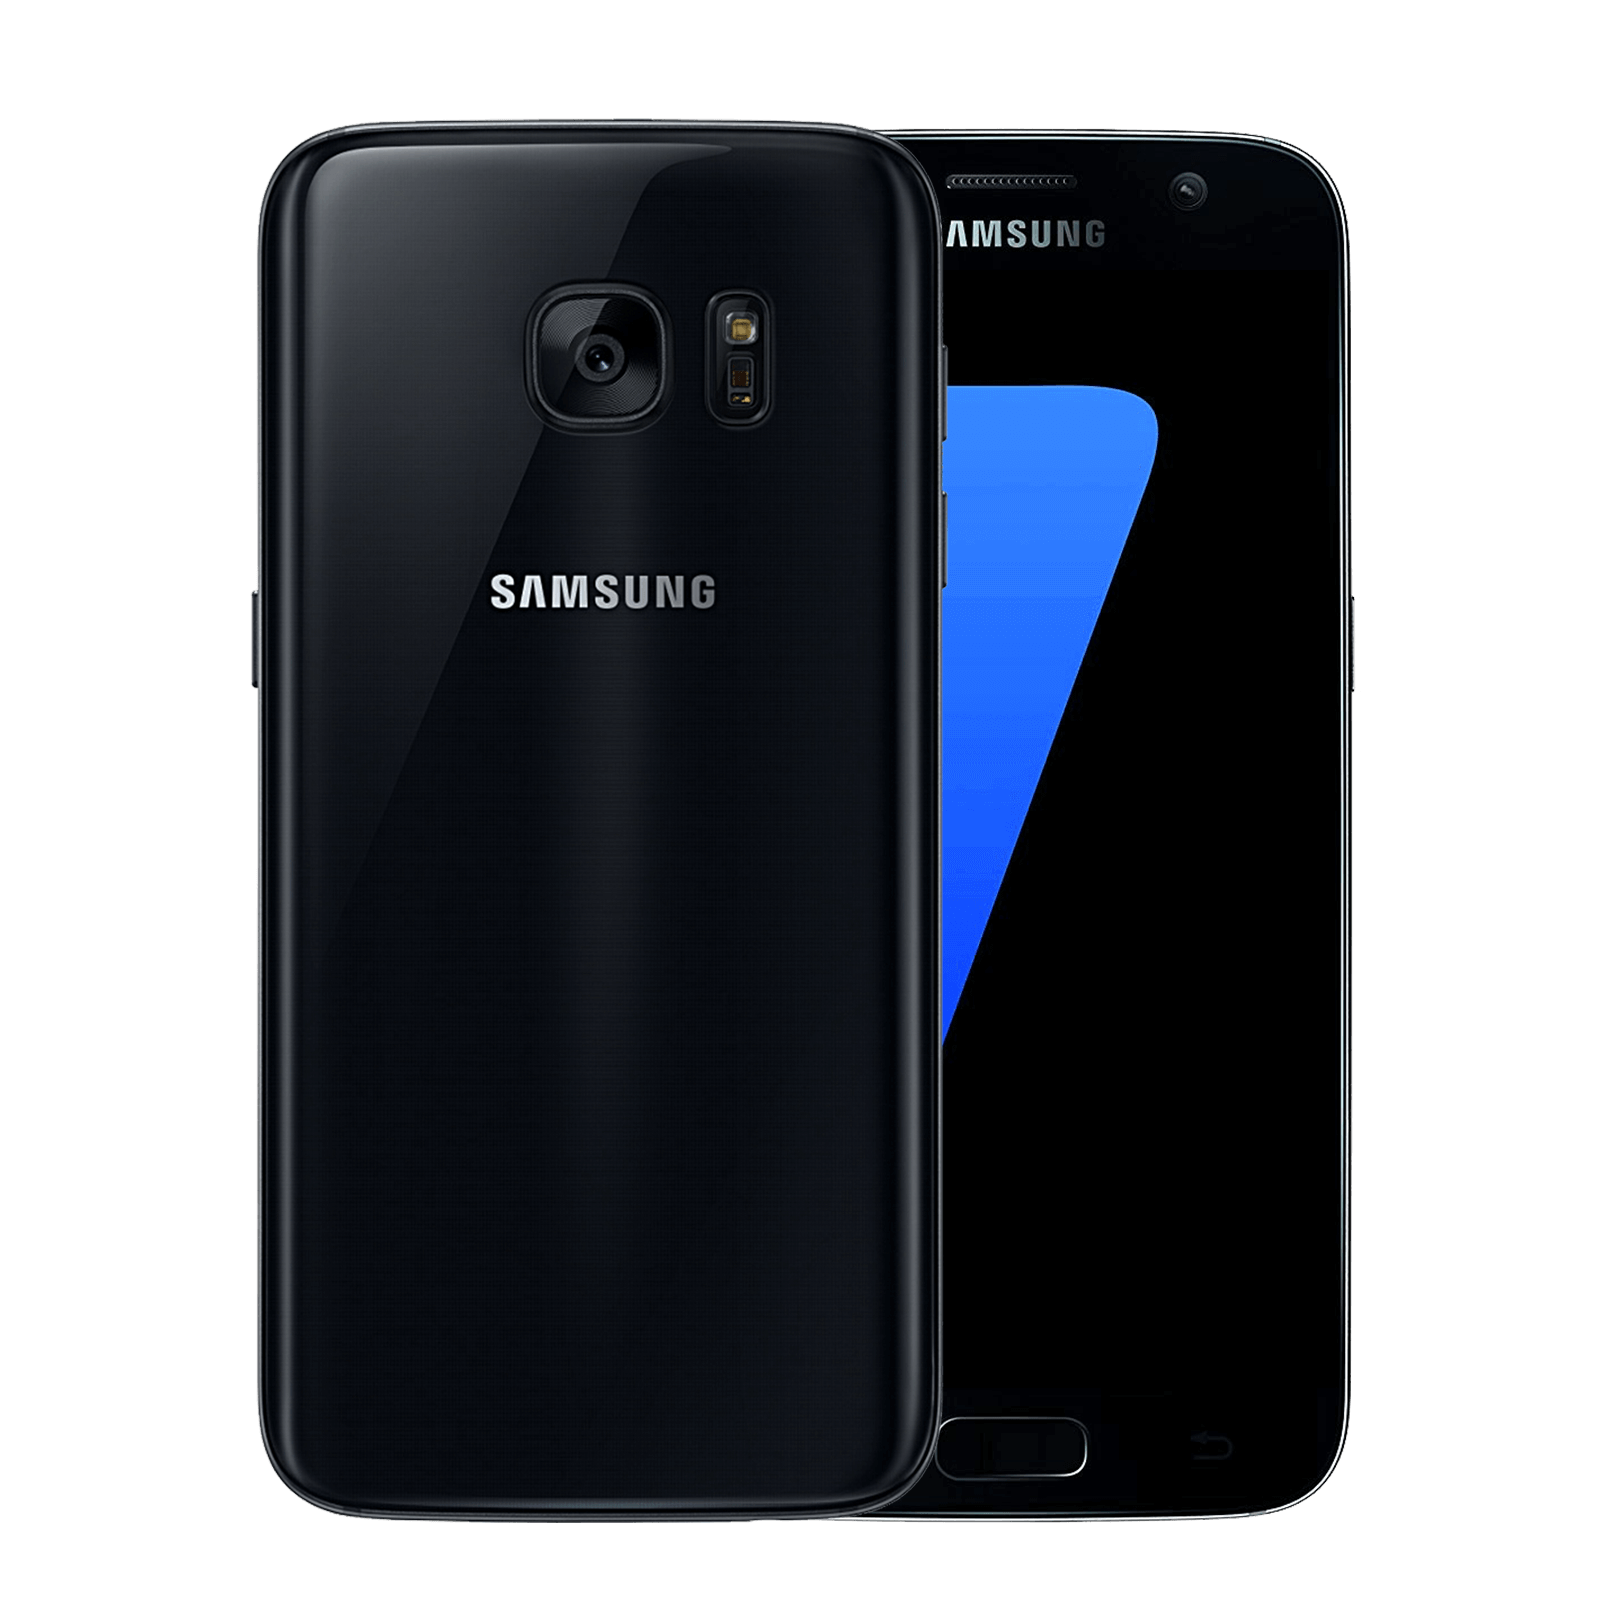 Samsung Galaxy S7 32GB Black Fair - Unlocked